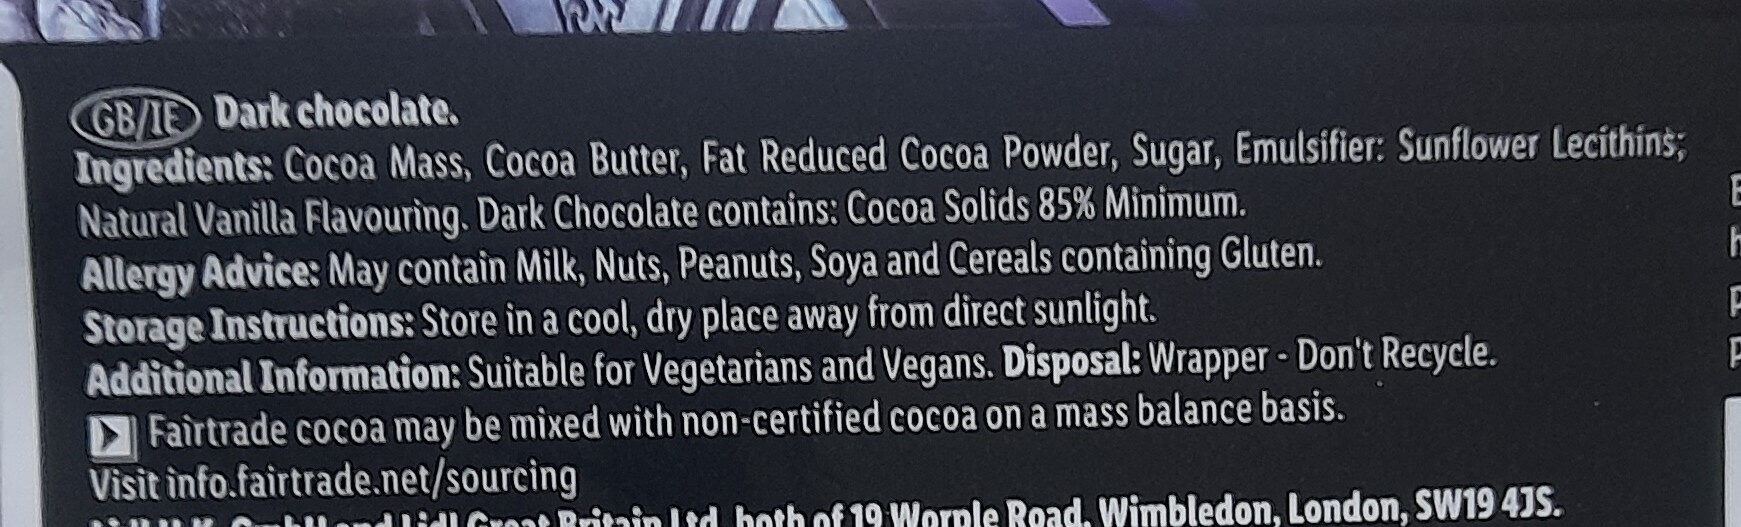 Extra Dark 85% Cocoa - Ingredients - en